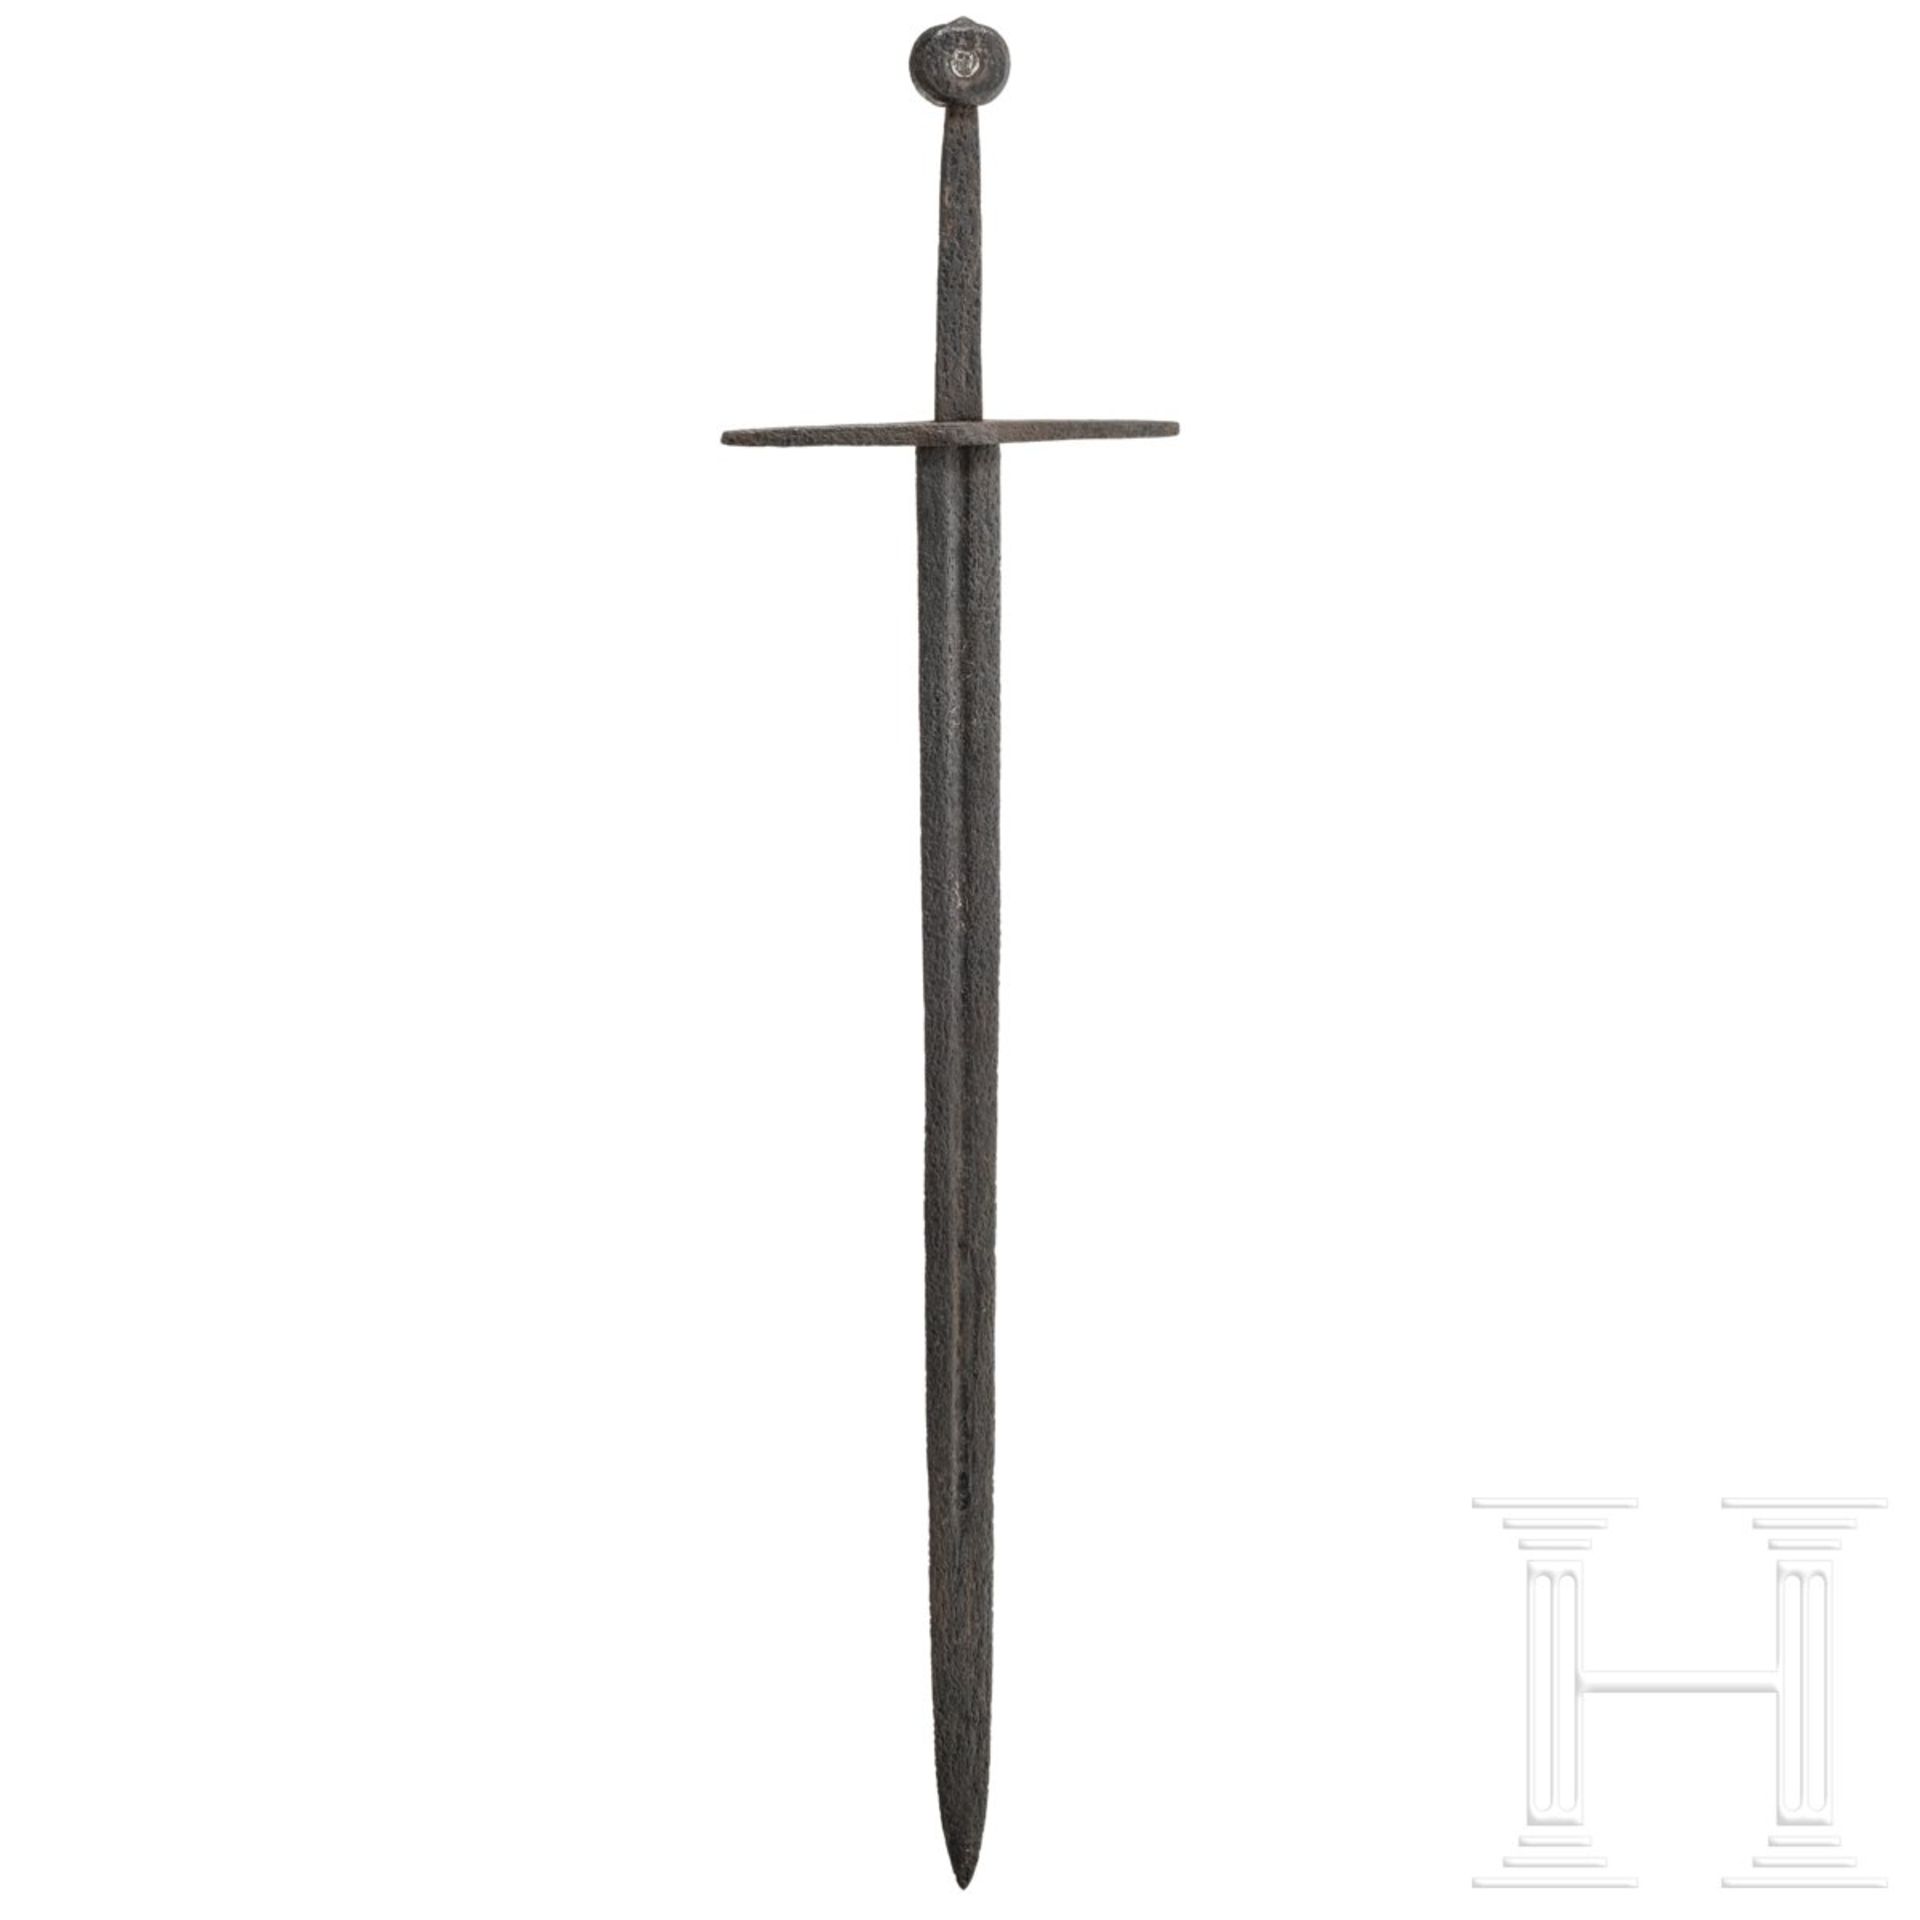 Ritterliches Schwert zu anderthalb Hand, Passau, ca. 1300 - 1350 - Bild 10 aus 10